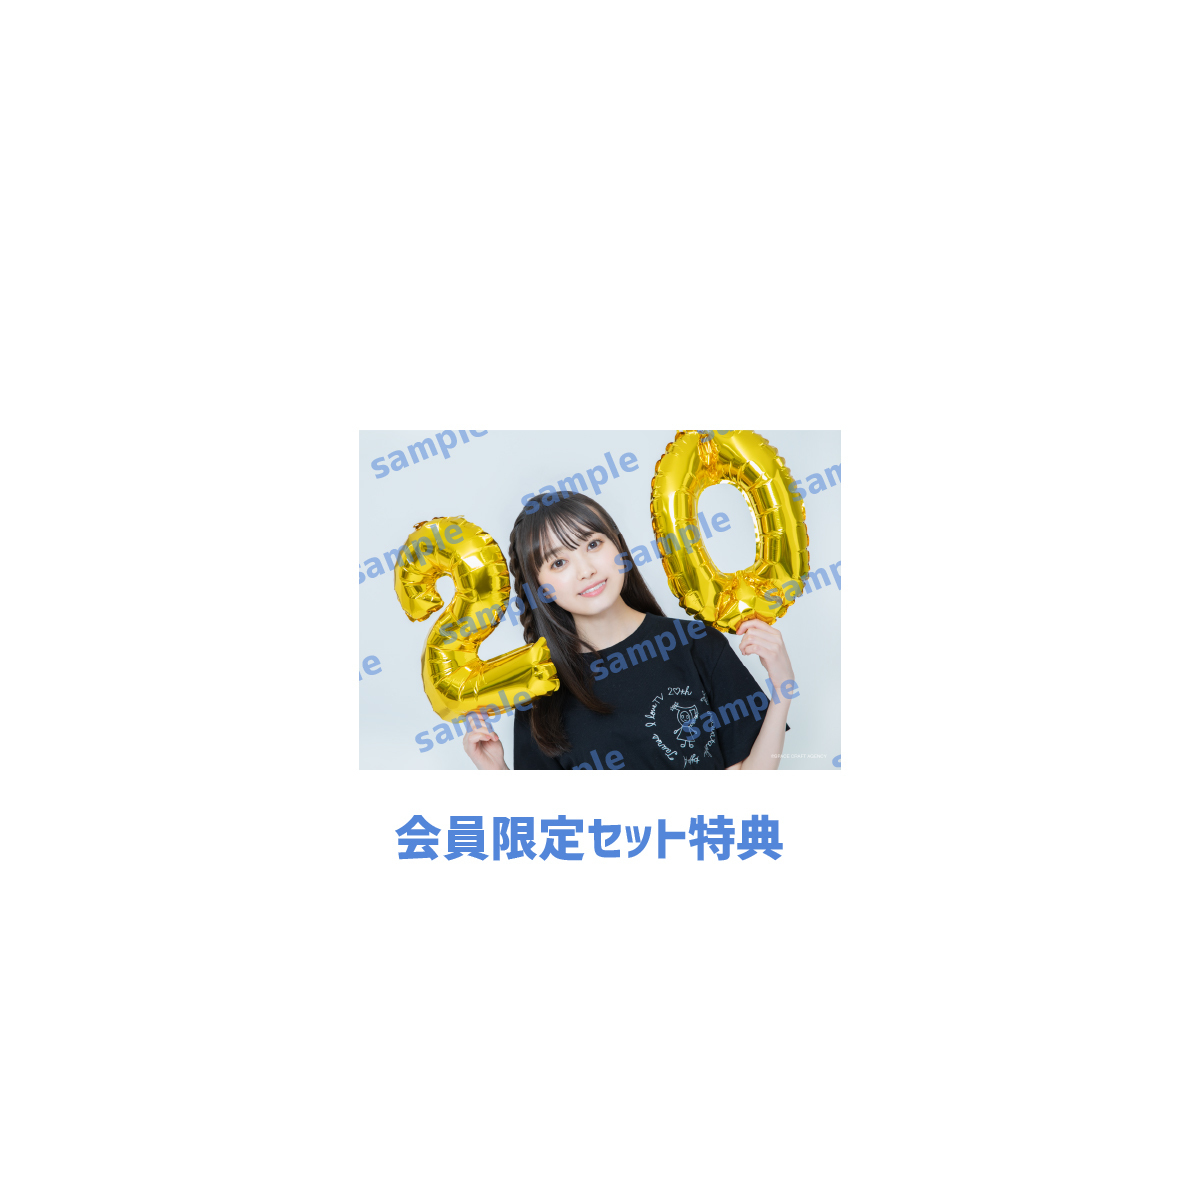 【会員限定】「写真セット+アクリルスタンドキーホルダー【生誕T(20歳ver.)】」セット